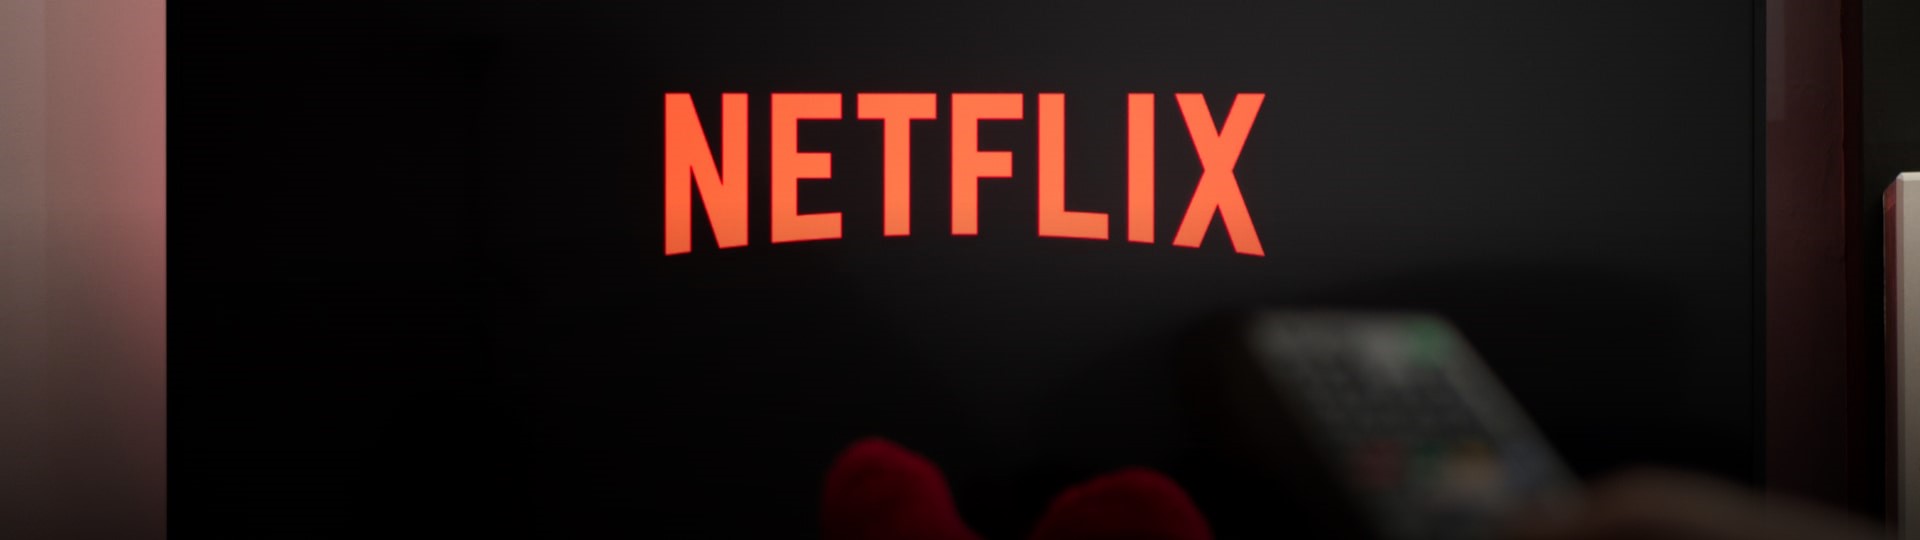 Jak Netflix vytváří společnou evropskou kulturu